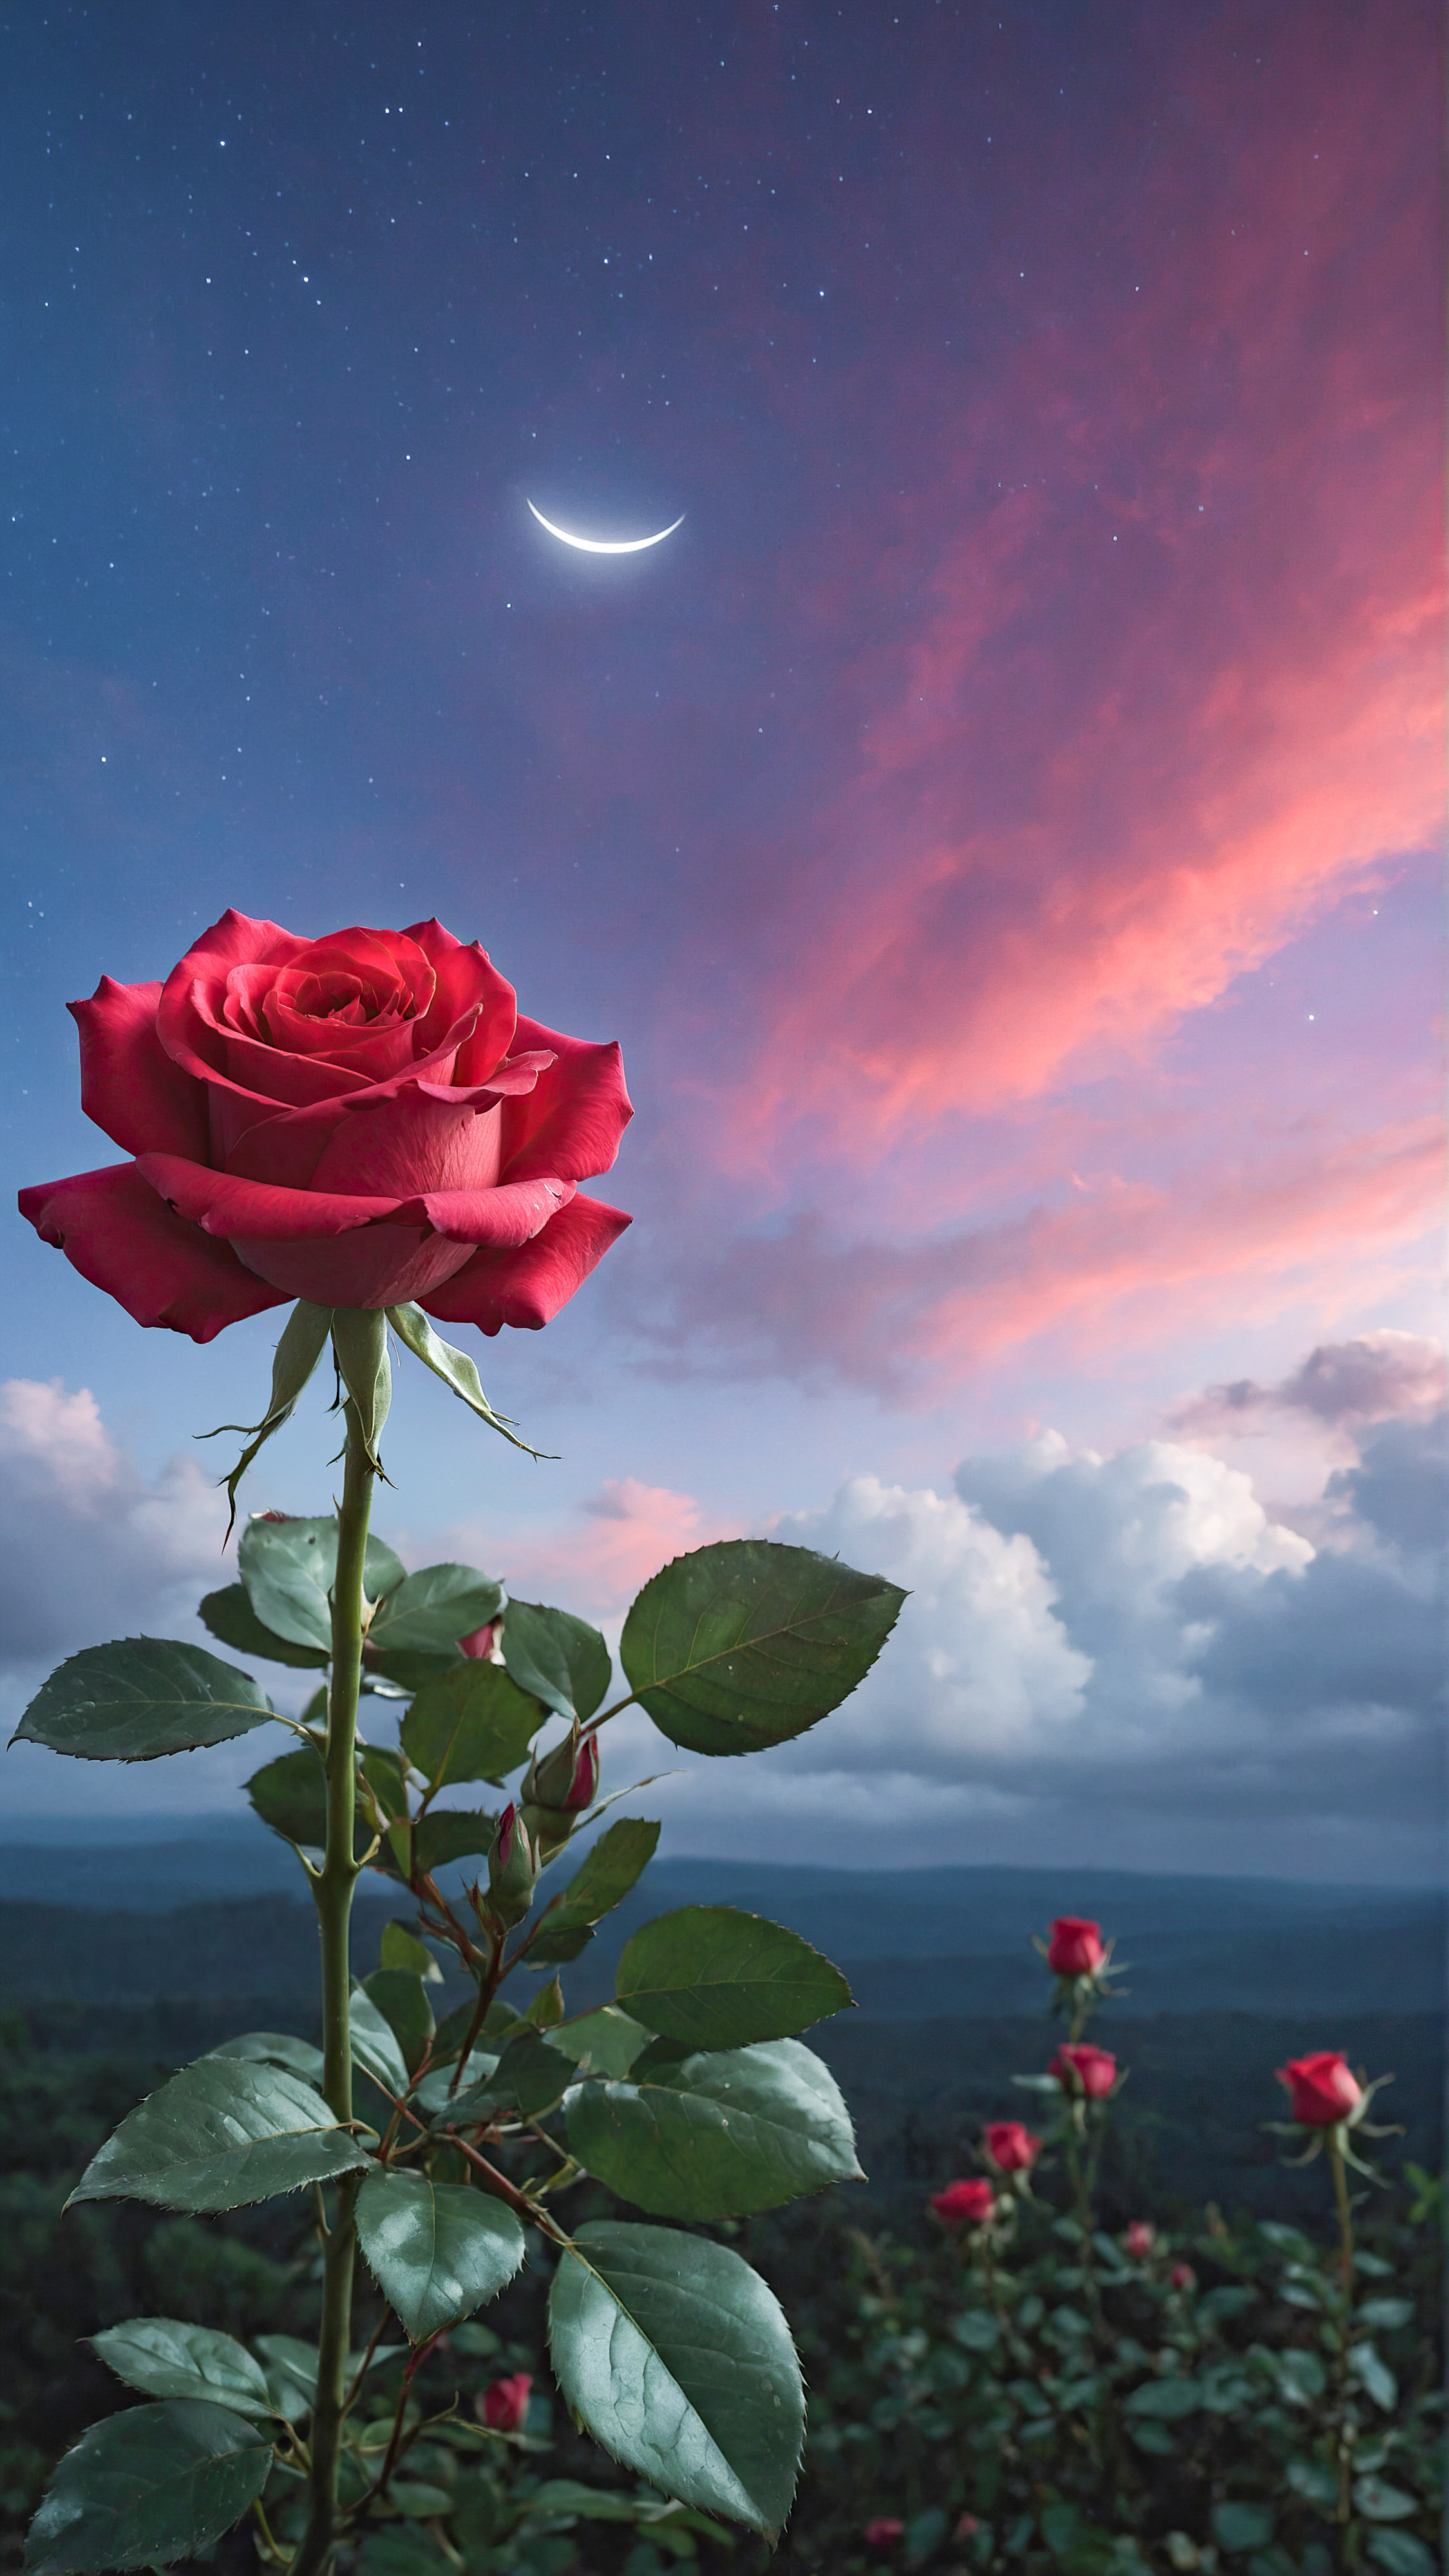 Faites l'expérience du charme d'un arrière-plan mignon pour votre iPhone, présentant une rose rouge vibrante enveloppée dans une aura magique, flottant au milieu d'un ciel rêveur rempli de nuages avec des nuances de violet et de bleu, et un croissant de lune discret en arrière-plan.